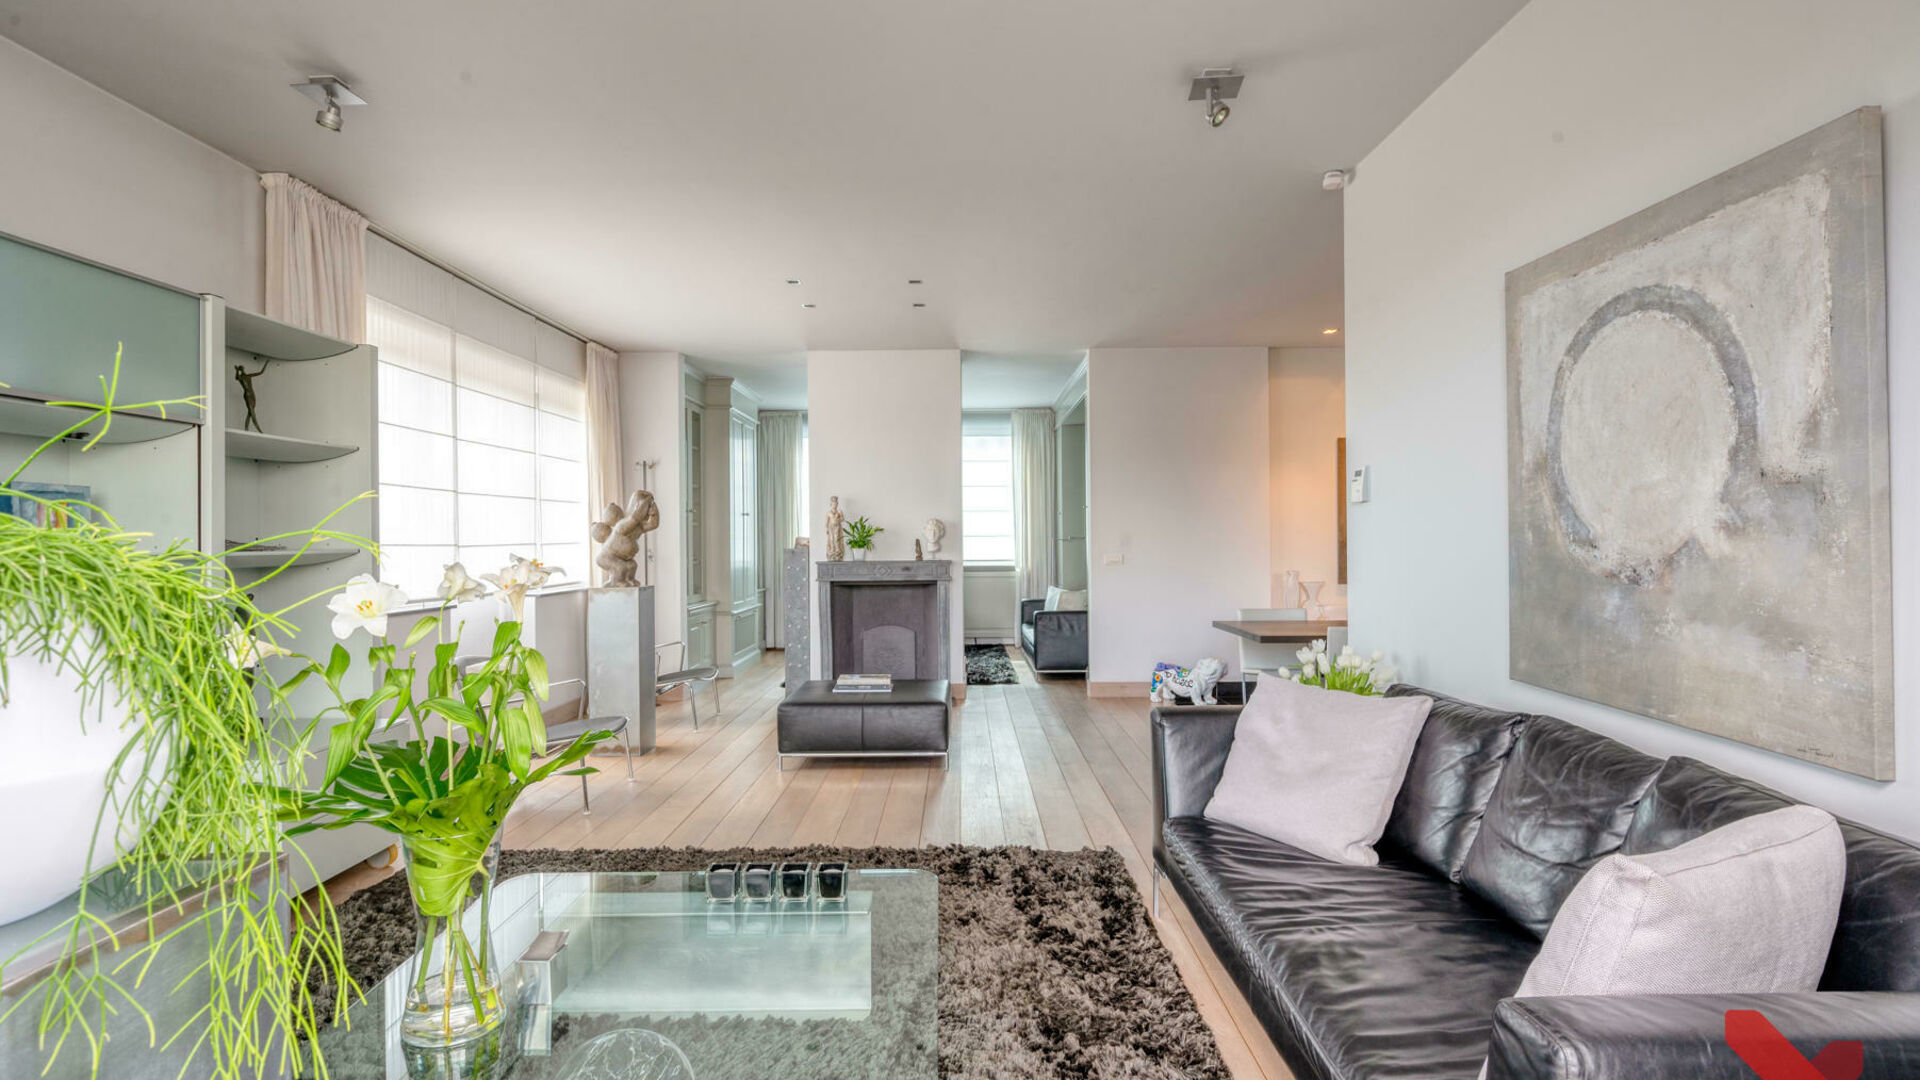 Dit prachtige luxe duplex appartement is gelegen aan de rand van Tienen centrum en biedt de perfecte combinatie van luxueus en stijlvol wonen. Het pand is afgewerkt met hoogwaardige materialen en beschikt over een ruim, zonnig terras.

Deze living is inge